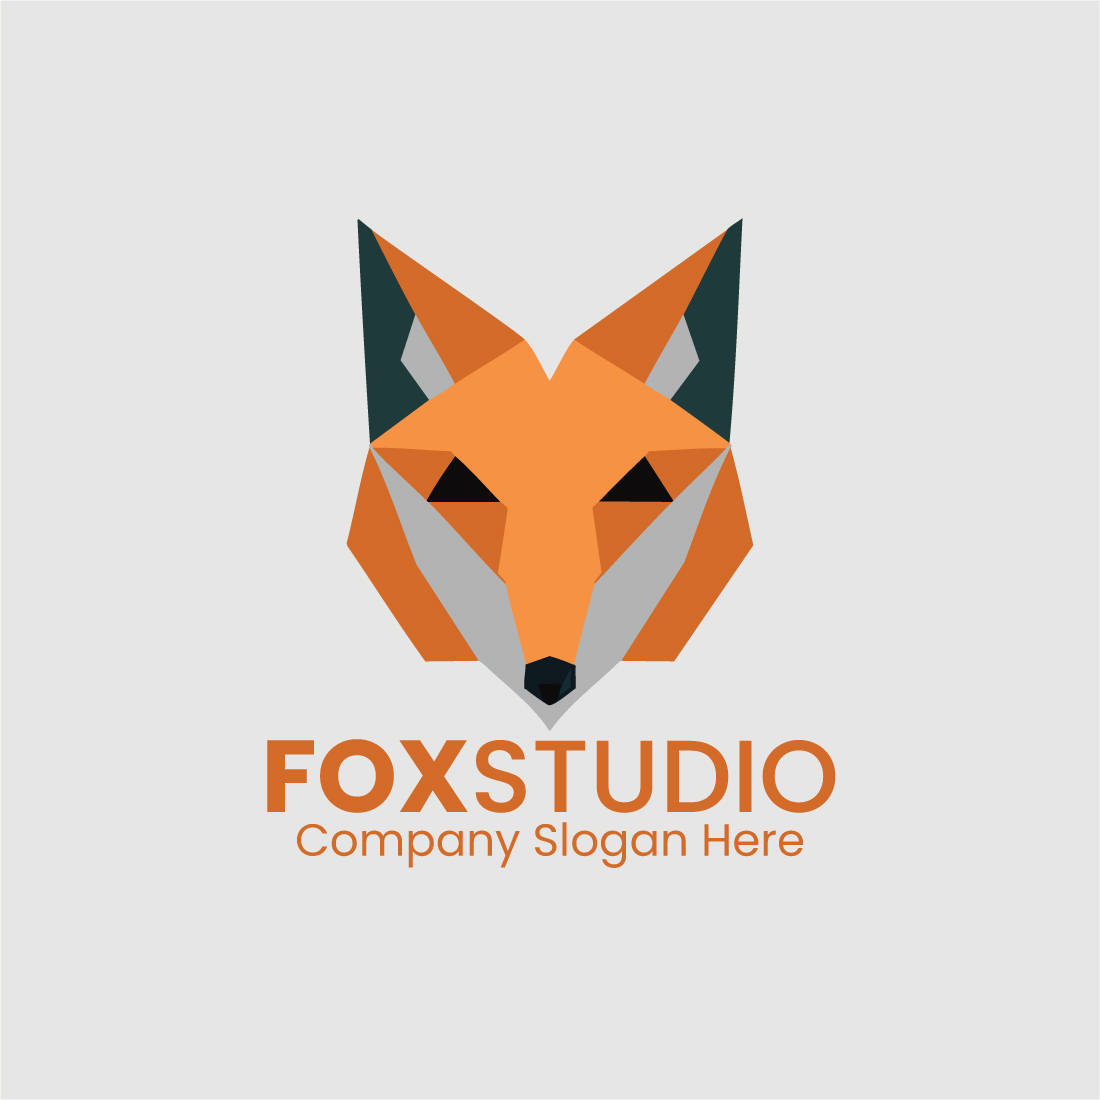 Fox Abstract Logo, Fox Logo, Abstract Logo cover image.